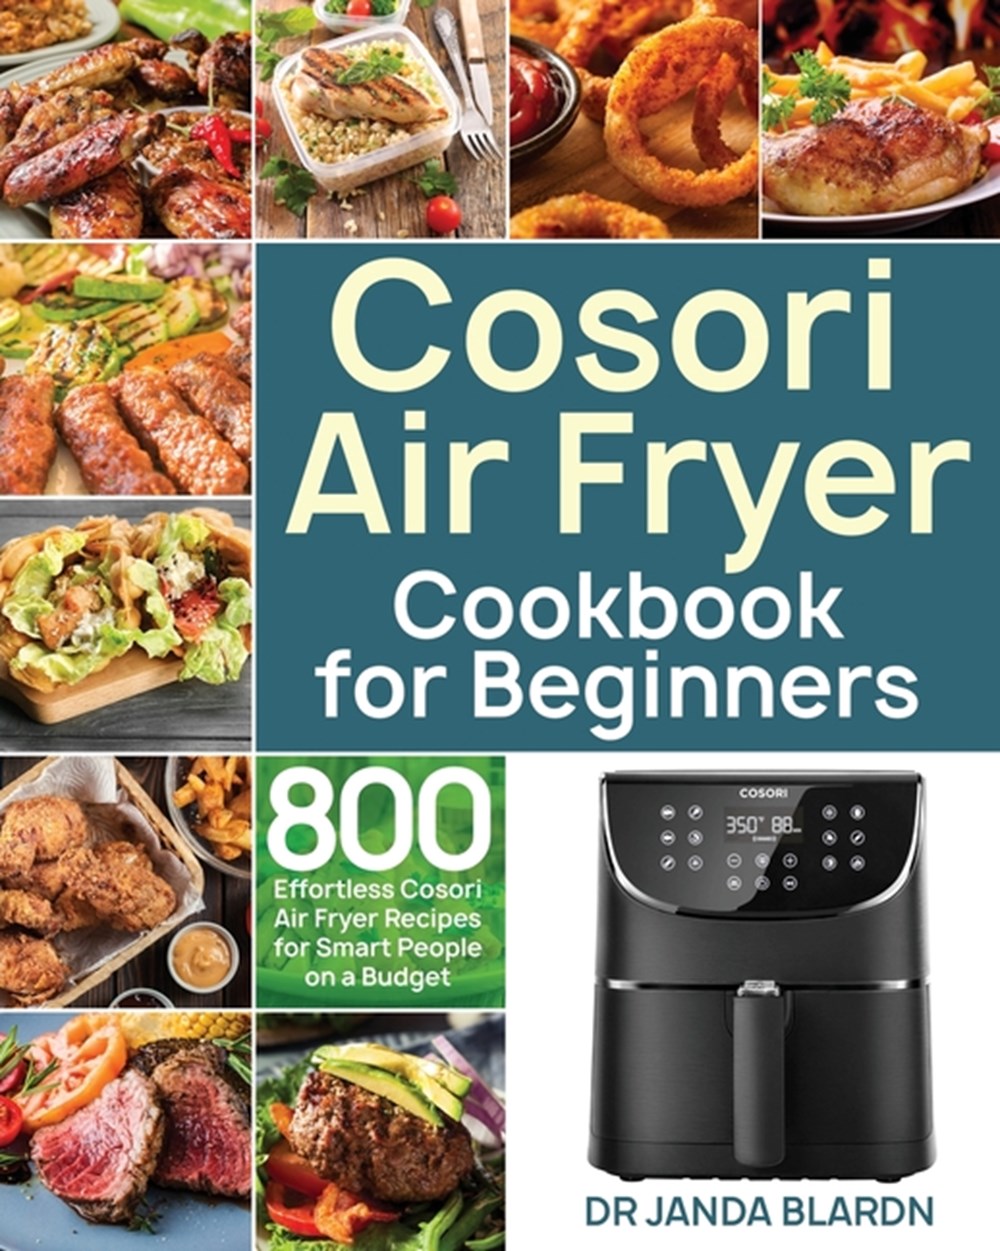 Buy Cosori Air Fryer Cookbook for Beginners by Janda Blardn